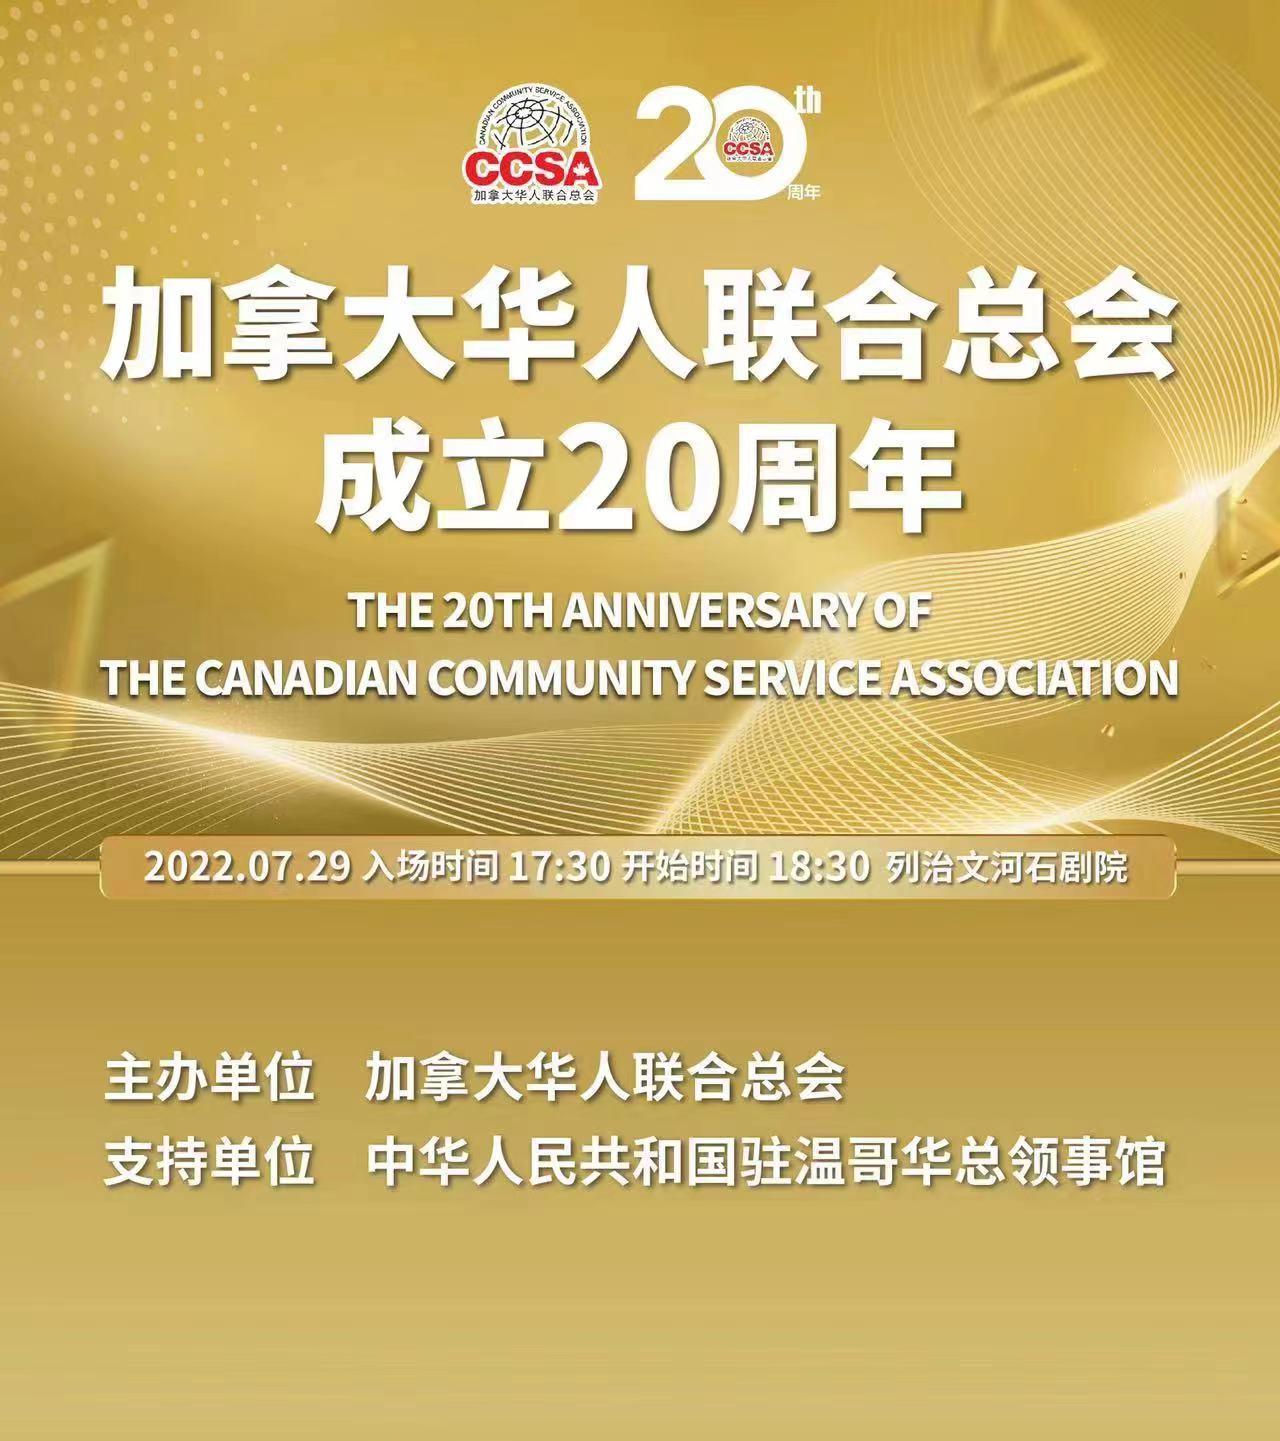 加拿大华人联合总会成立20周年庆典盛大举行